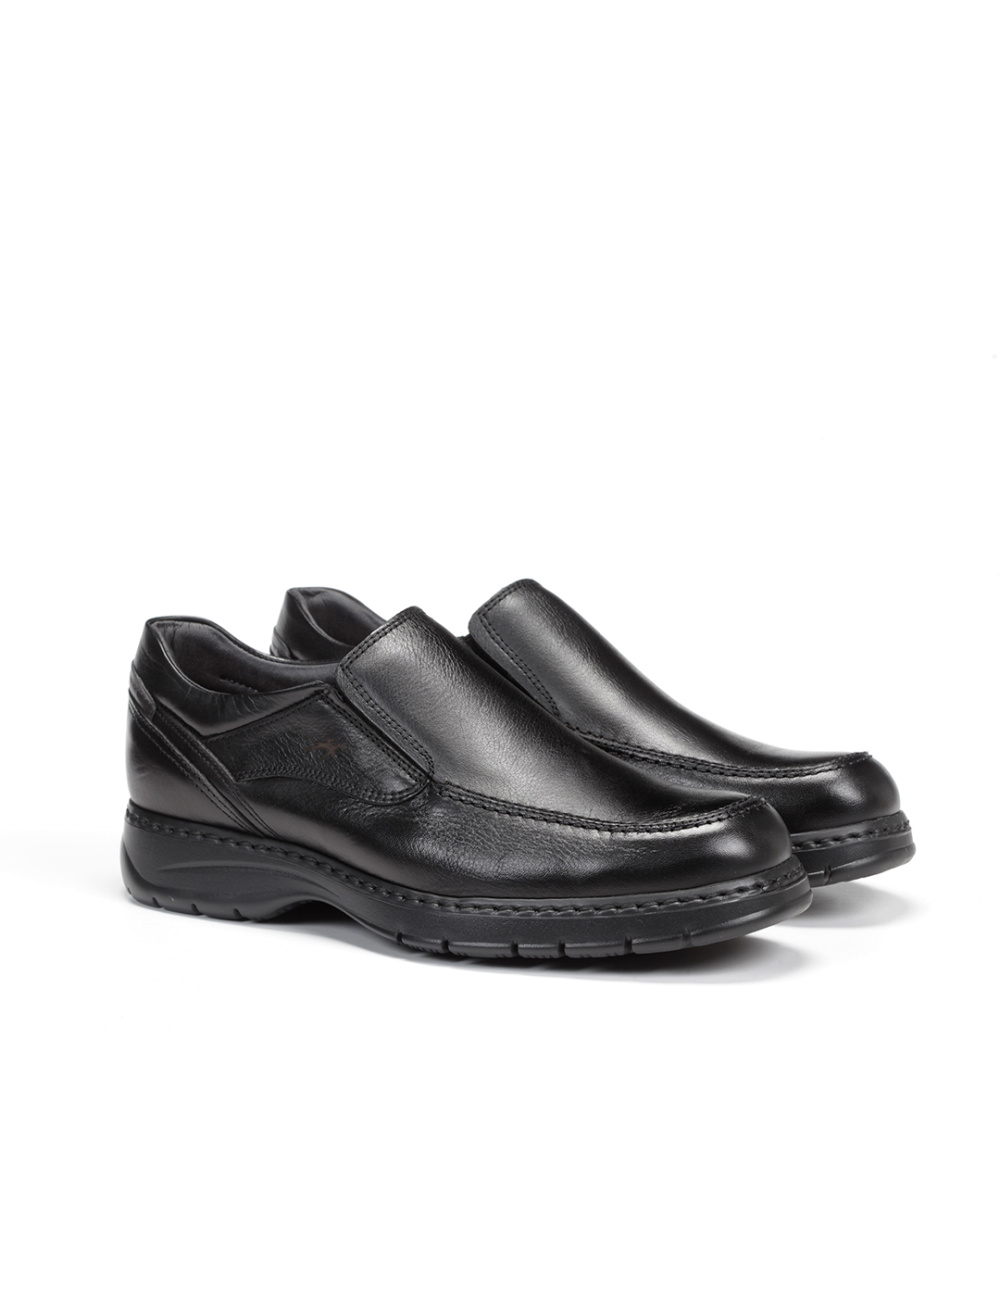 Fluchos - Zapato casual de hombre 9144